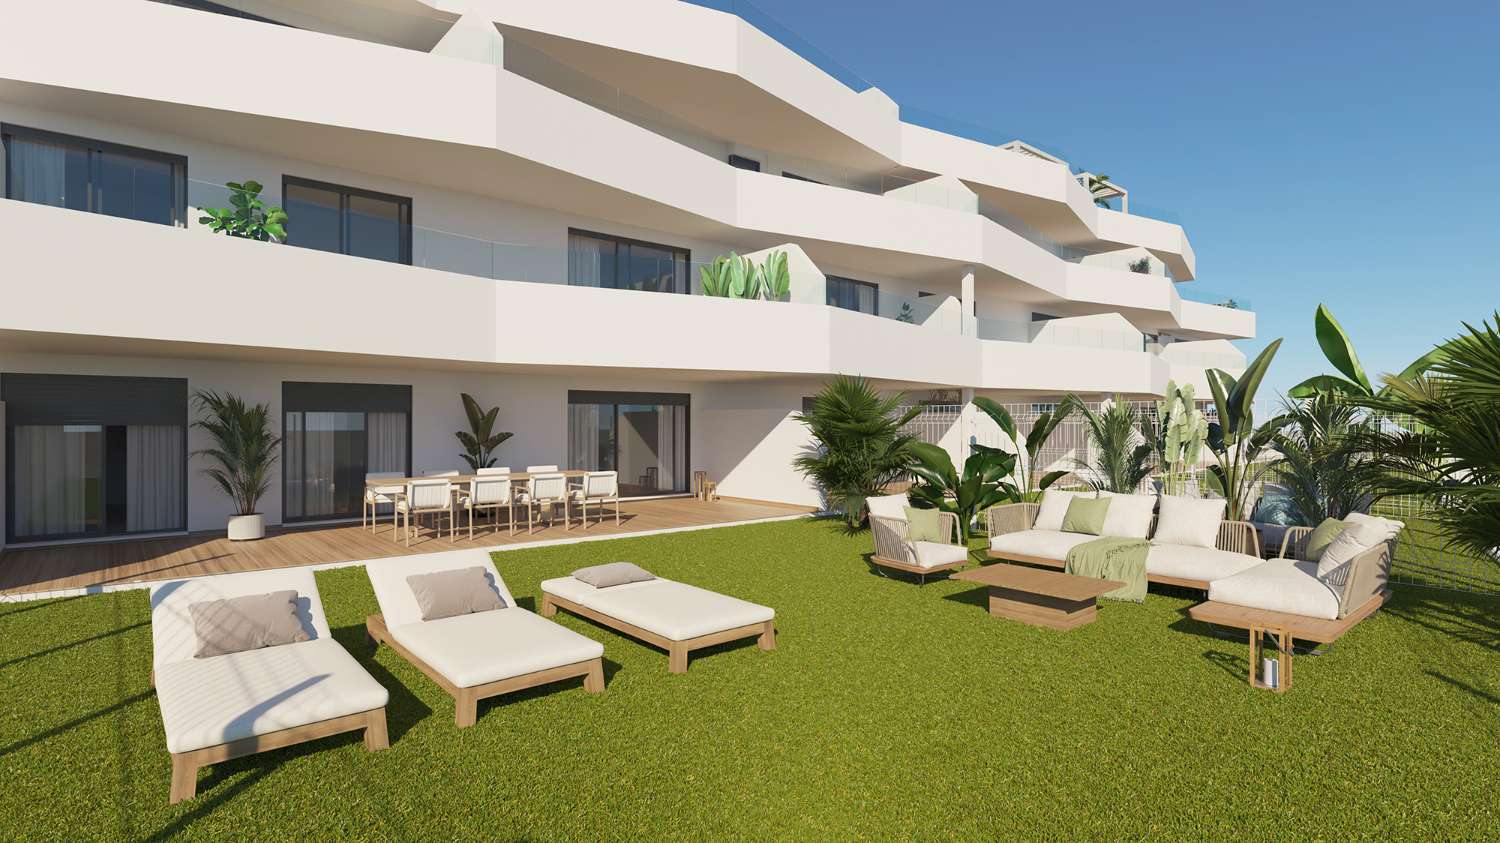 Apartamento de lujo en planta baja de nueva promoción en Estepona - Costa del Sol